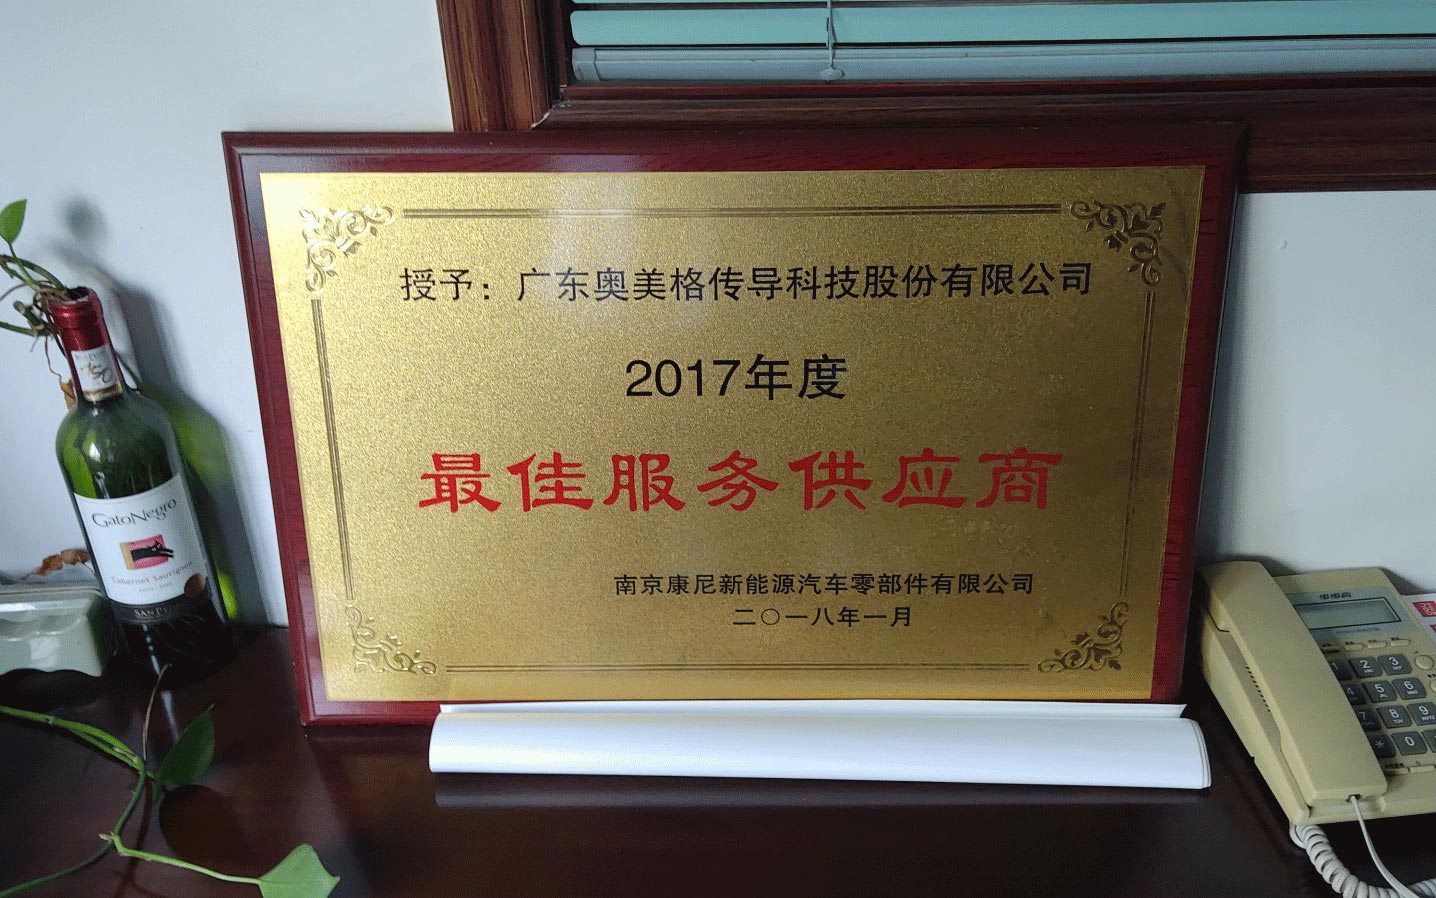 OMG ganhou o prêmio Nanjing KANGNI Outstanding Supplier Award